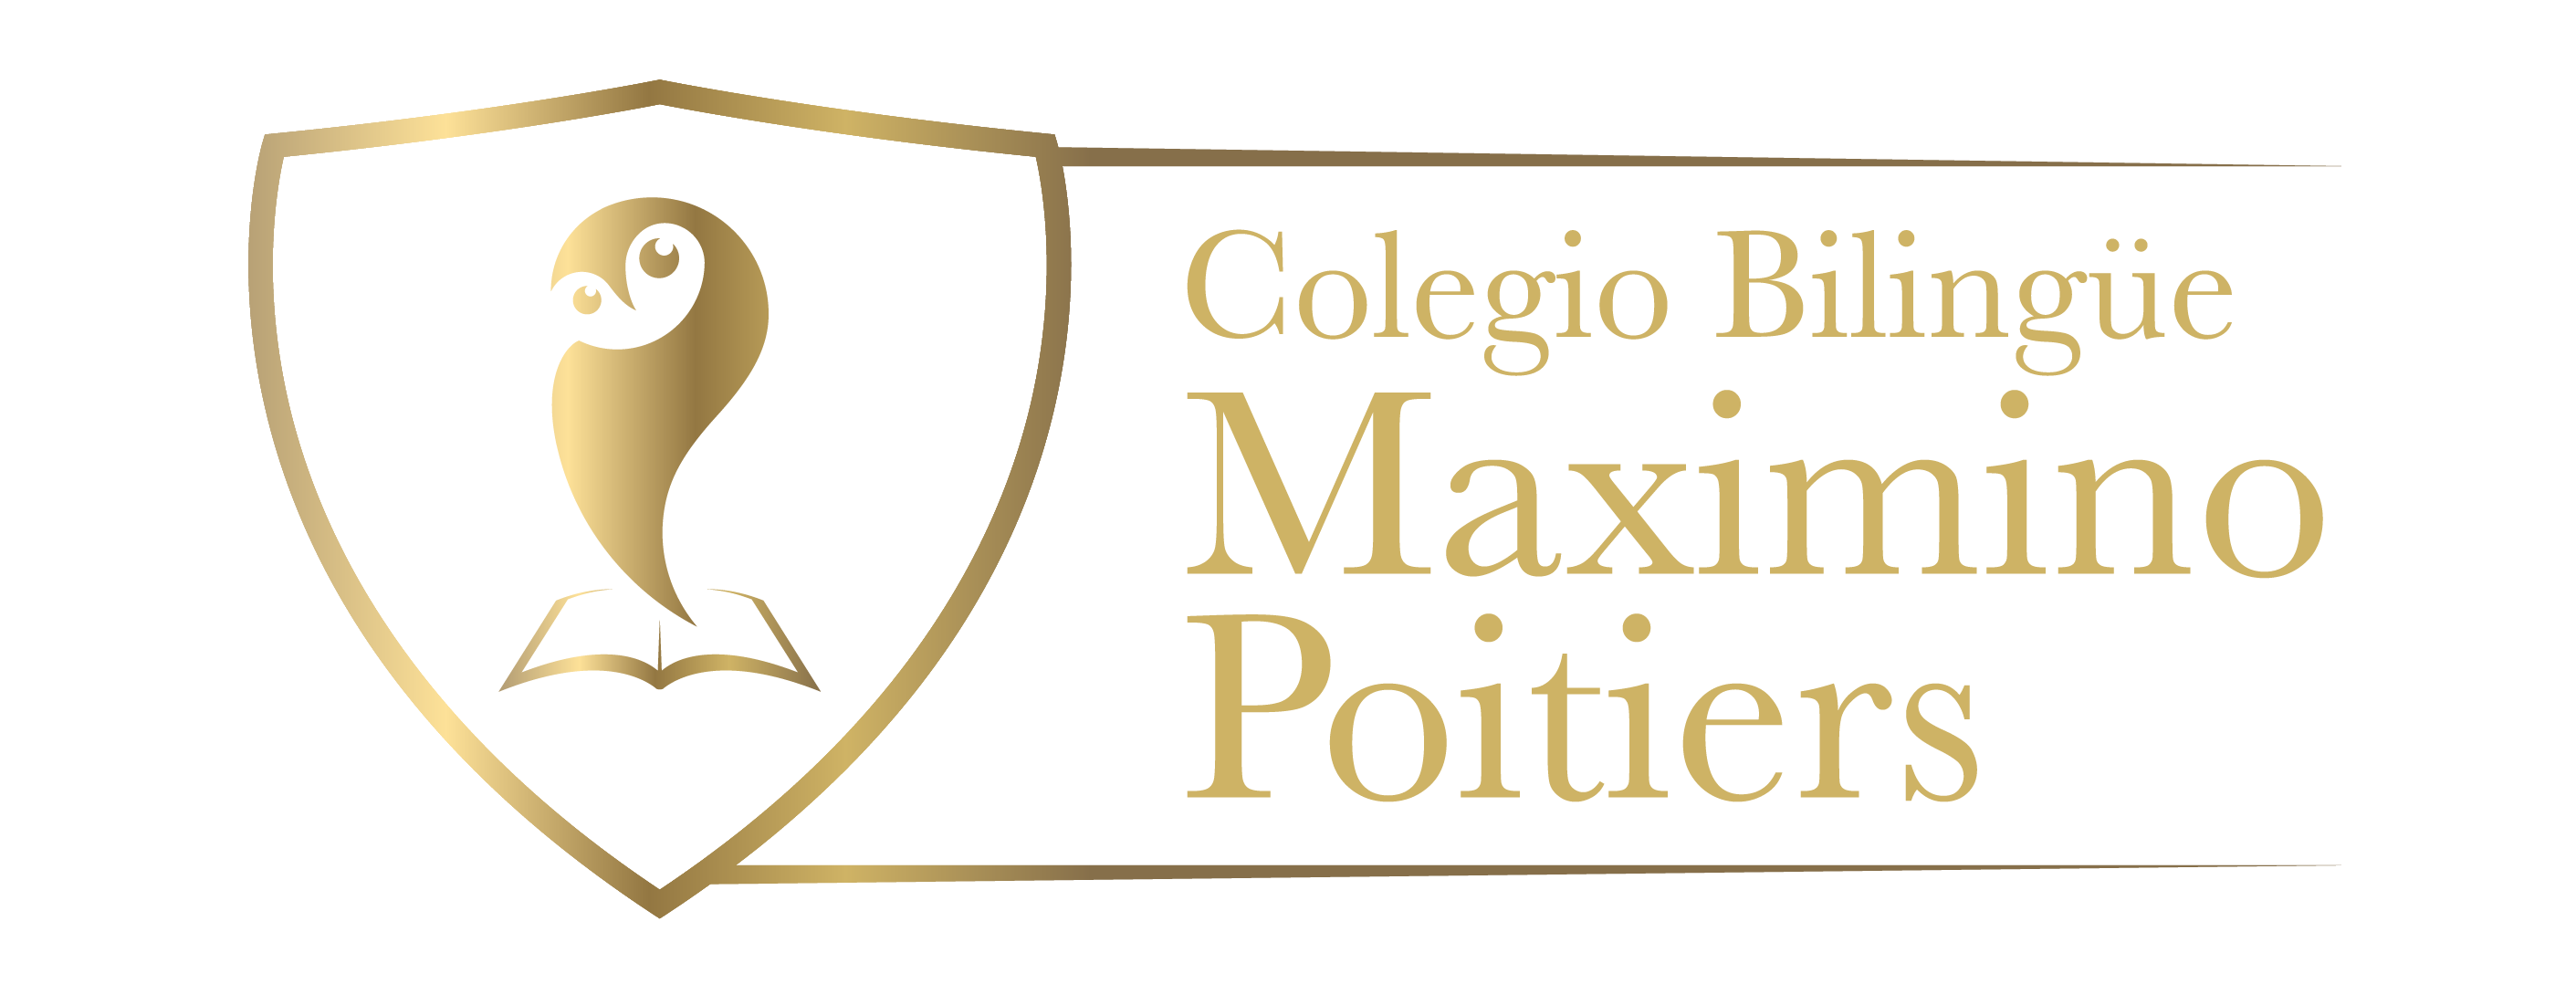 COLEGIO BILINGUE MAXIMINO POITIERS|Jardines BOGOTA|Jardines COLOMBIA